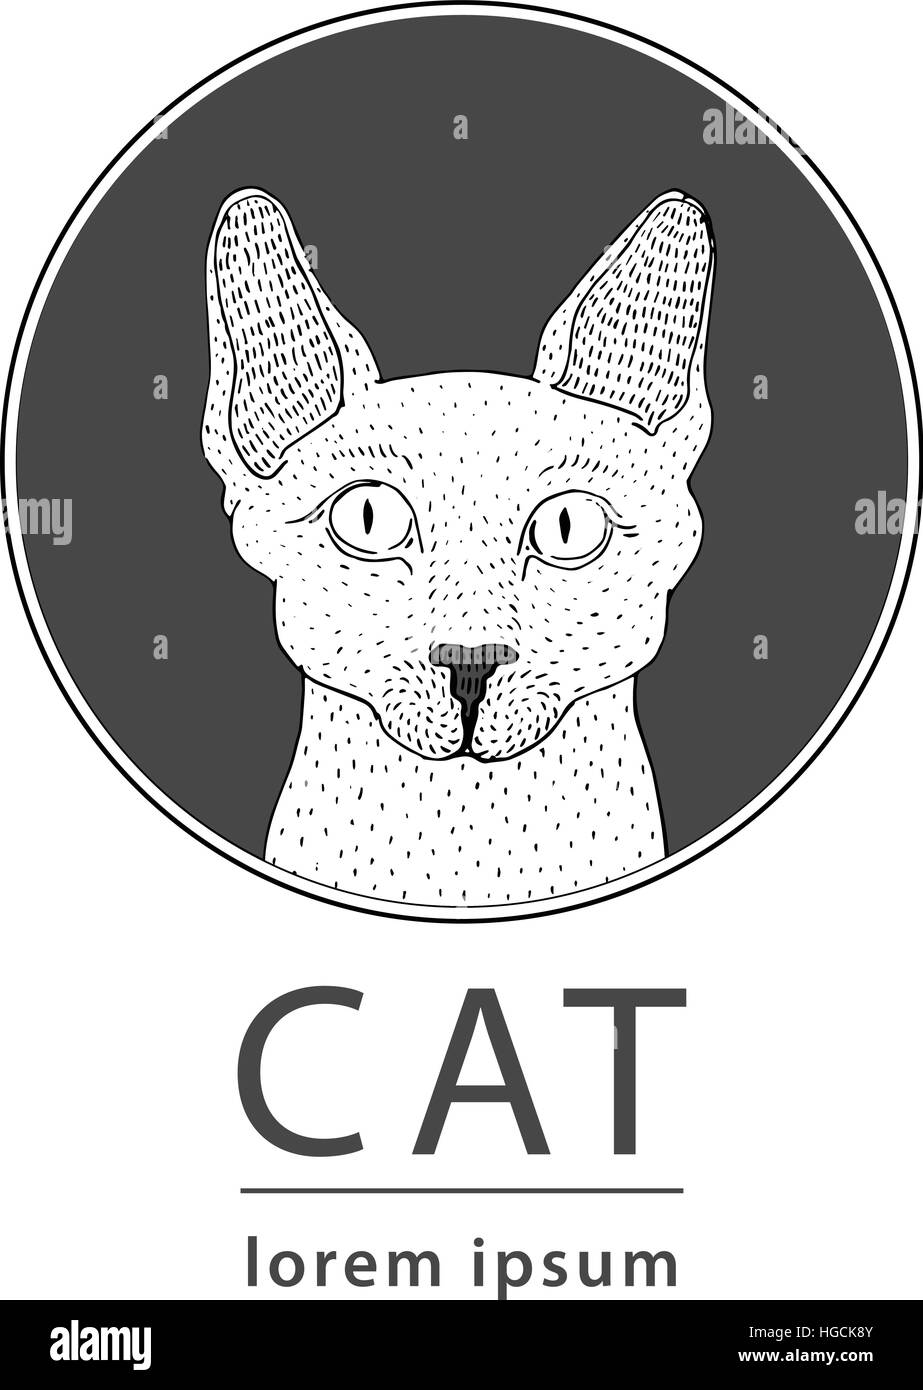 Sphynx cat logo, vector illustration Stock Vector